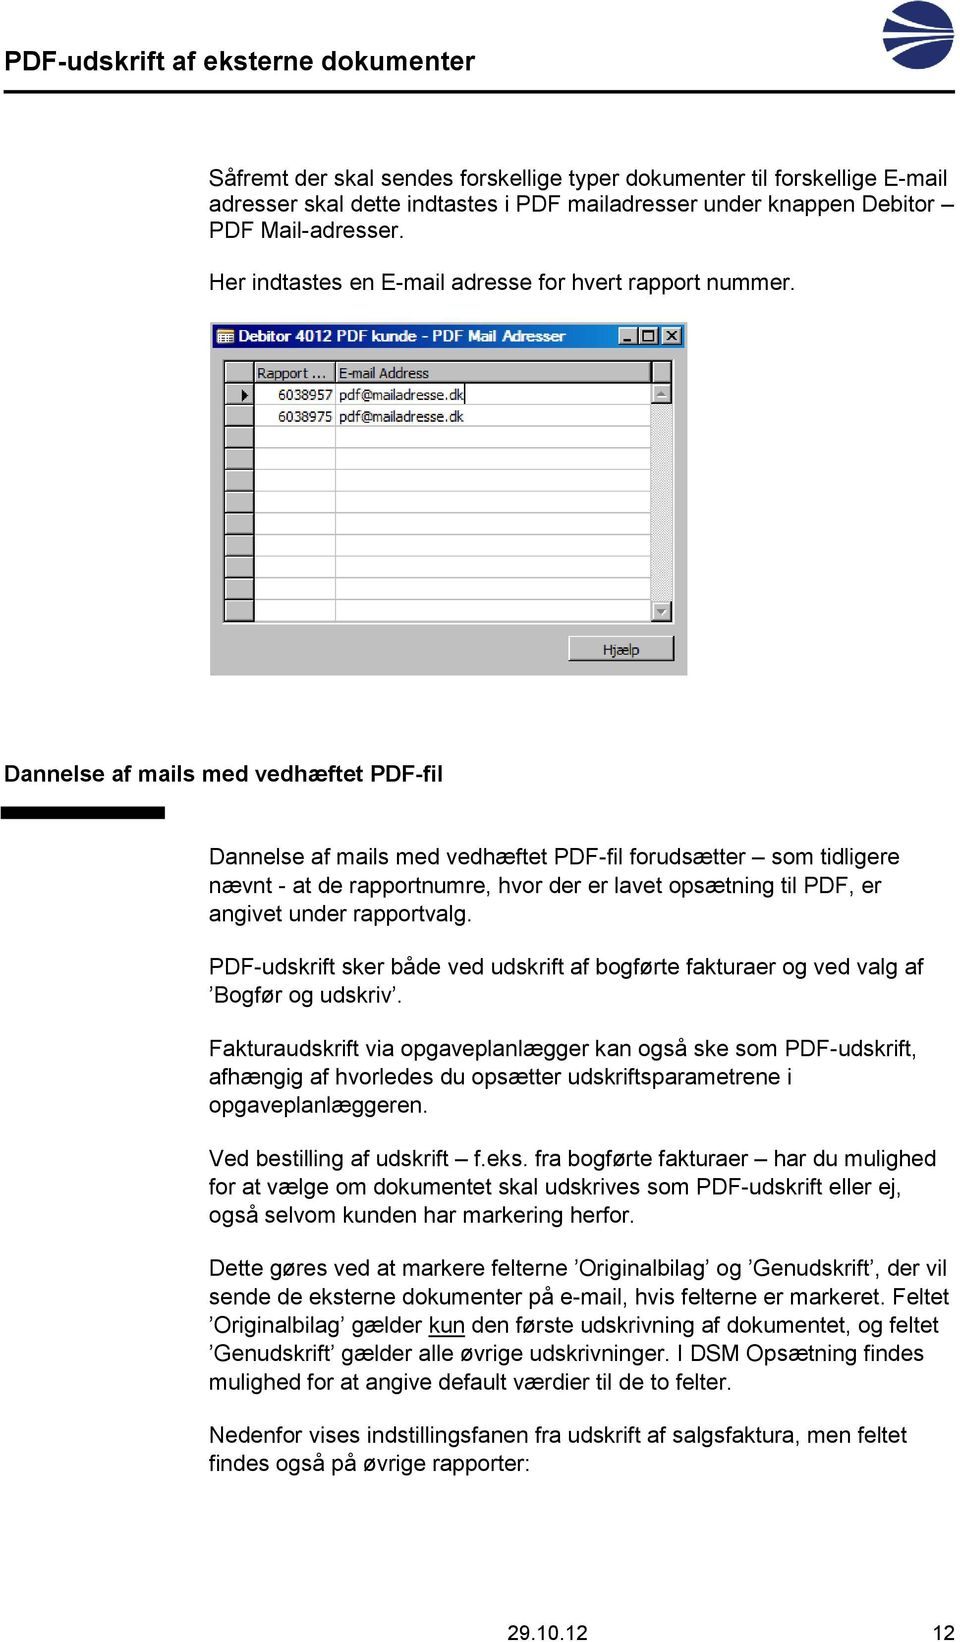 Dannelse af mails med vedhæftet PDF-fil Dannelse af mails med vedhæftet PDF-fil forudsætter som tidligere nævnt - at de rapportnumre, hvor der er lavet opsætning til PDF, er angivet under rapportvalg.